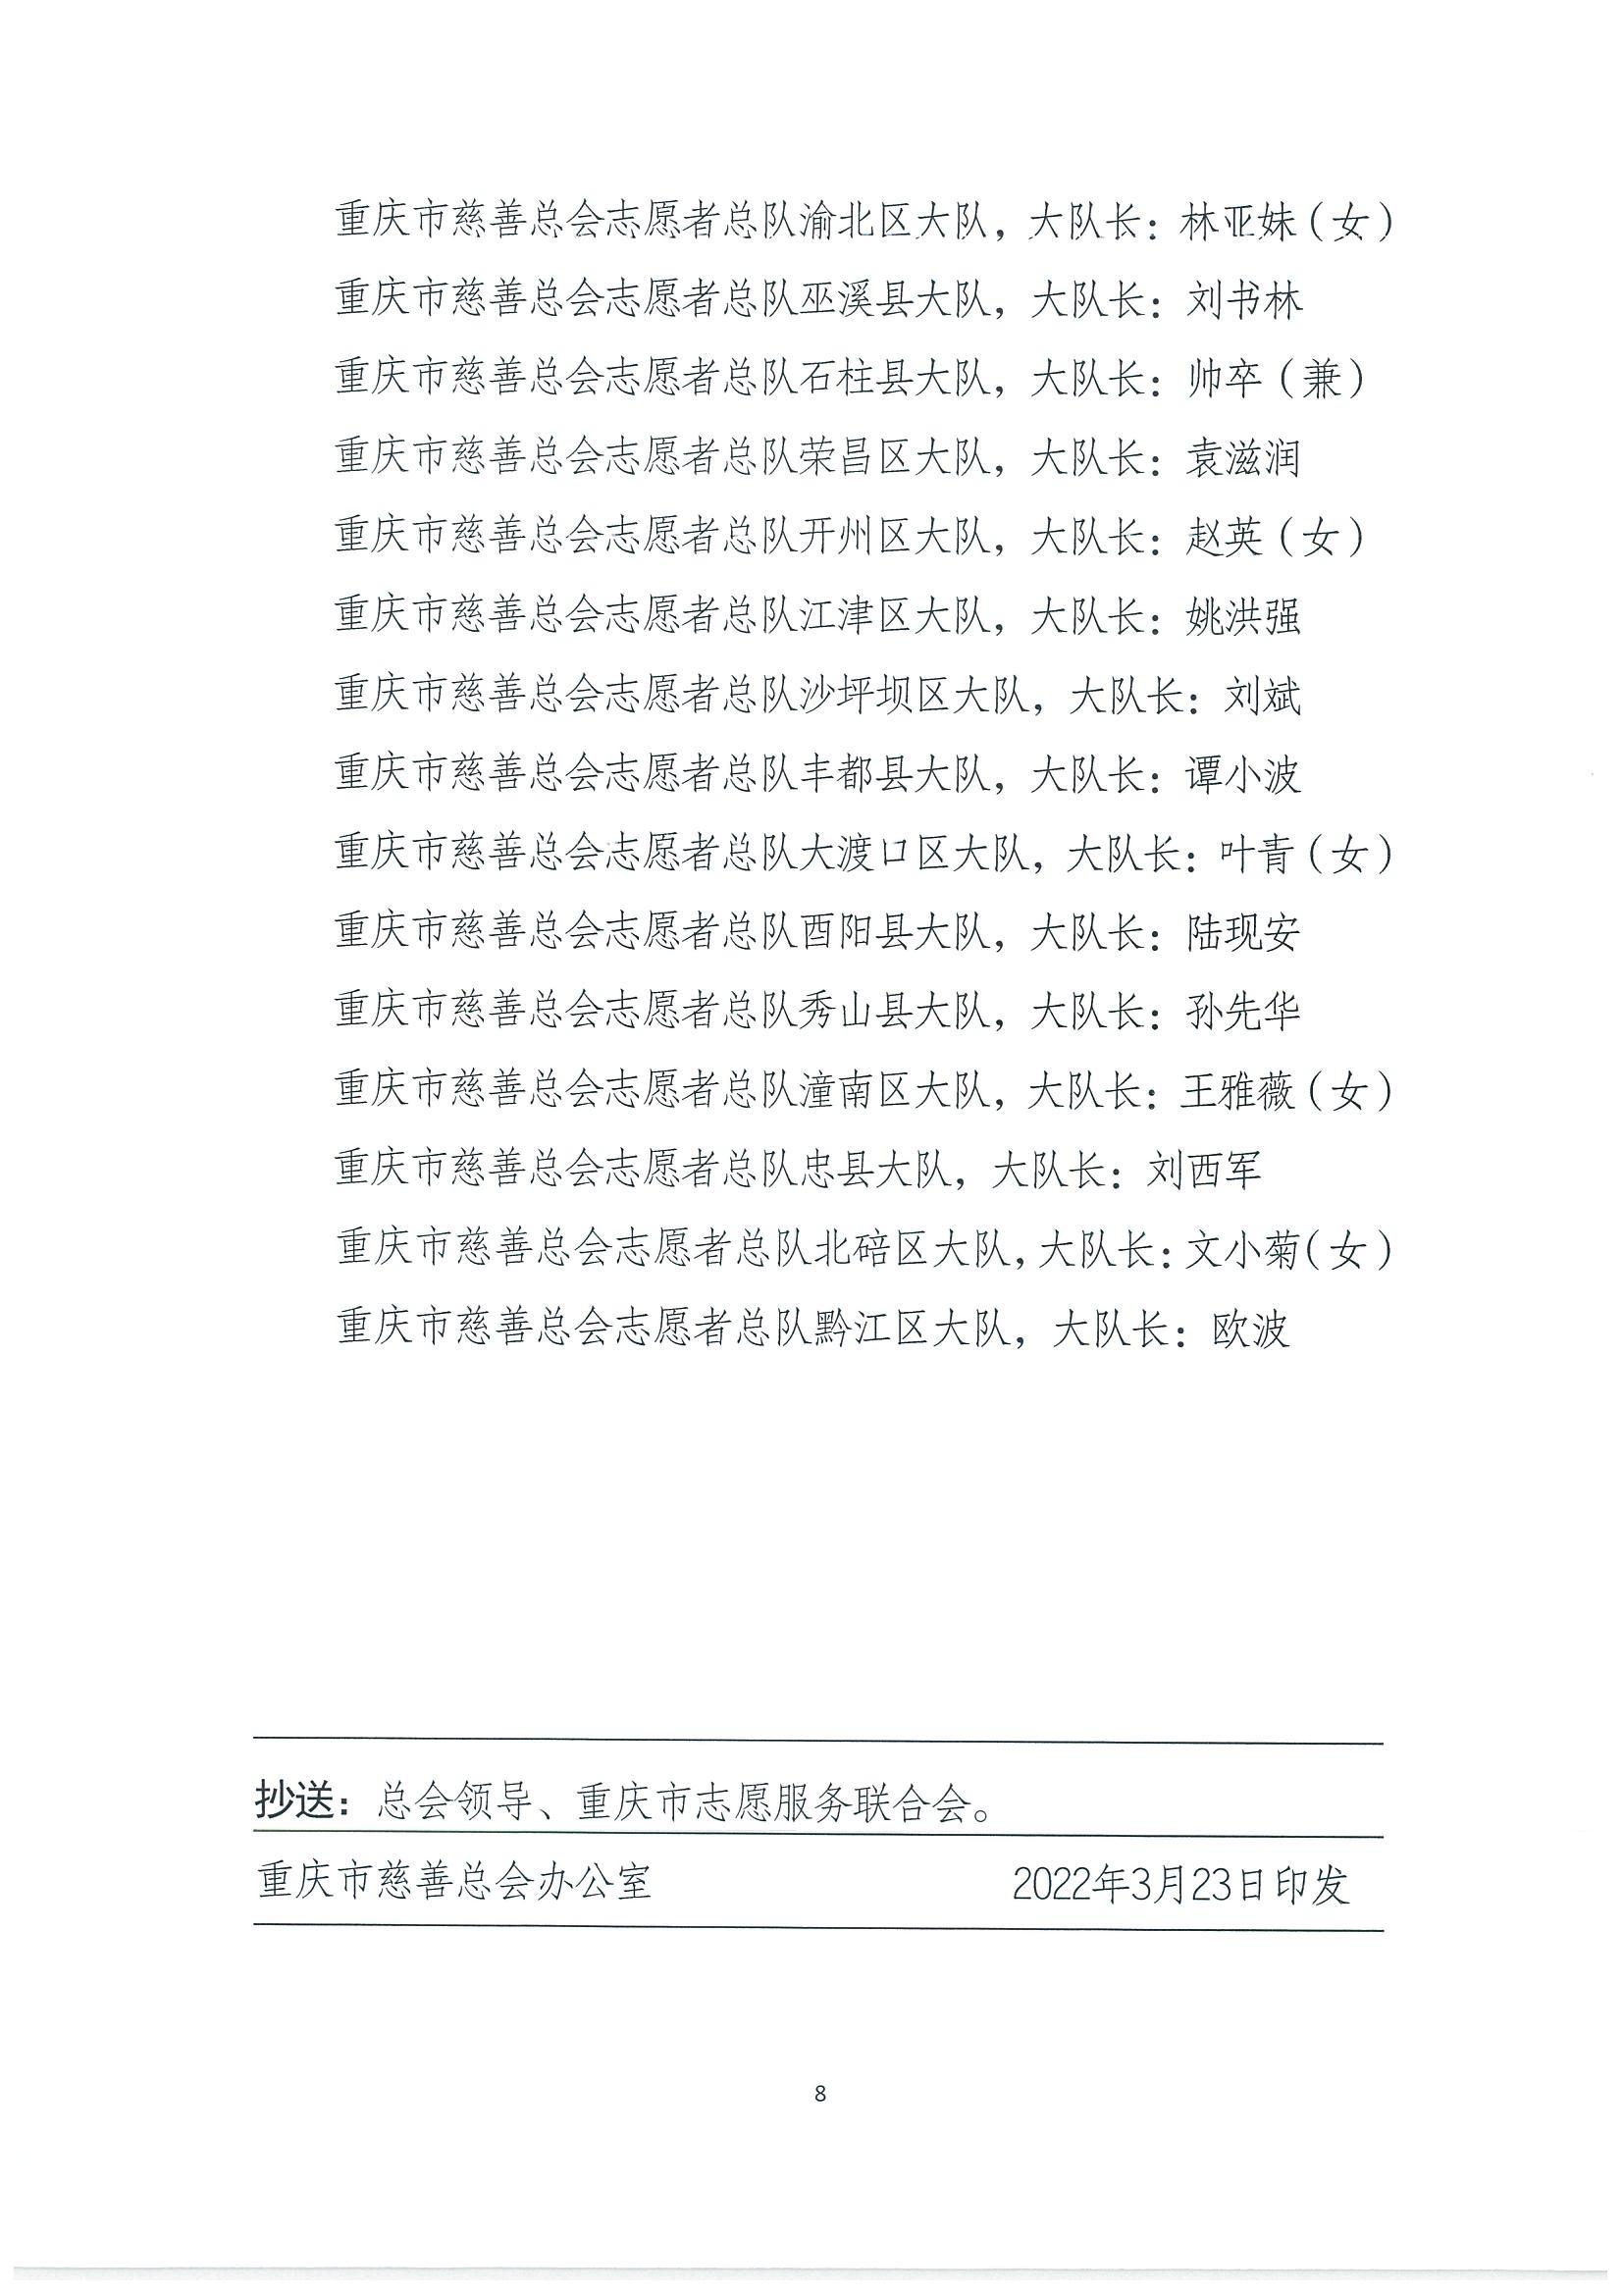 重慶市慈善總會關于公布志愿者總隊組織機構的通知_07.jpg